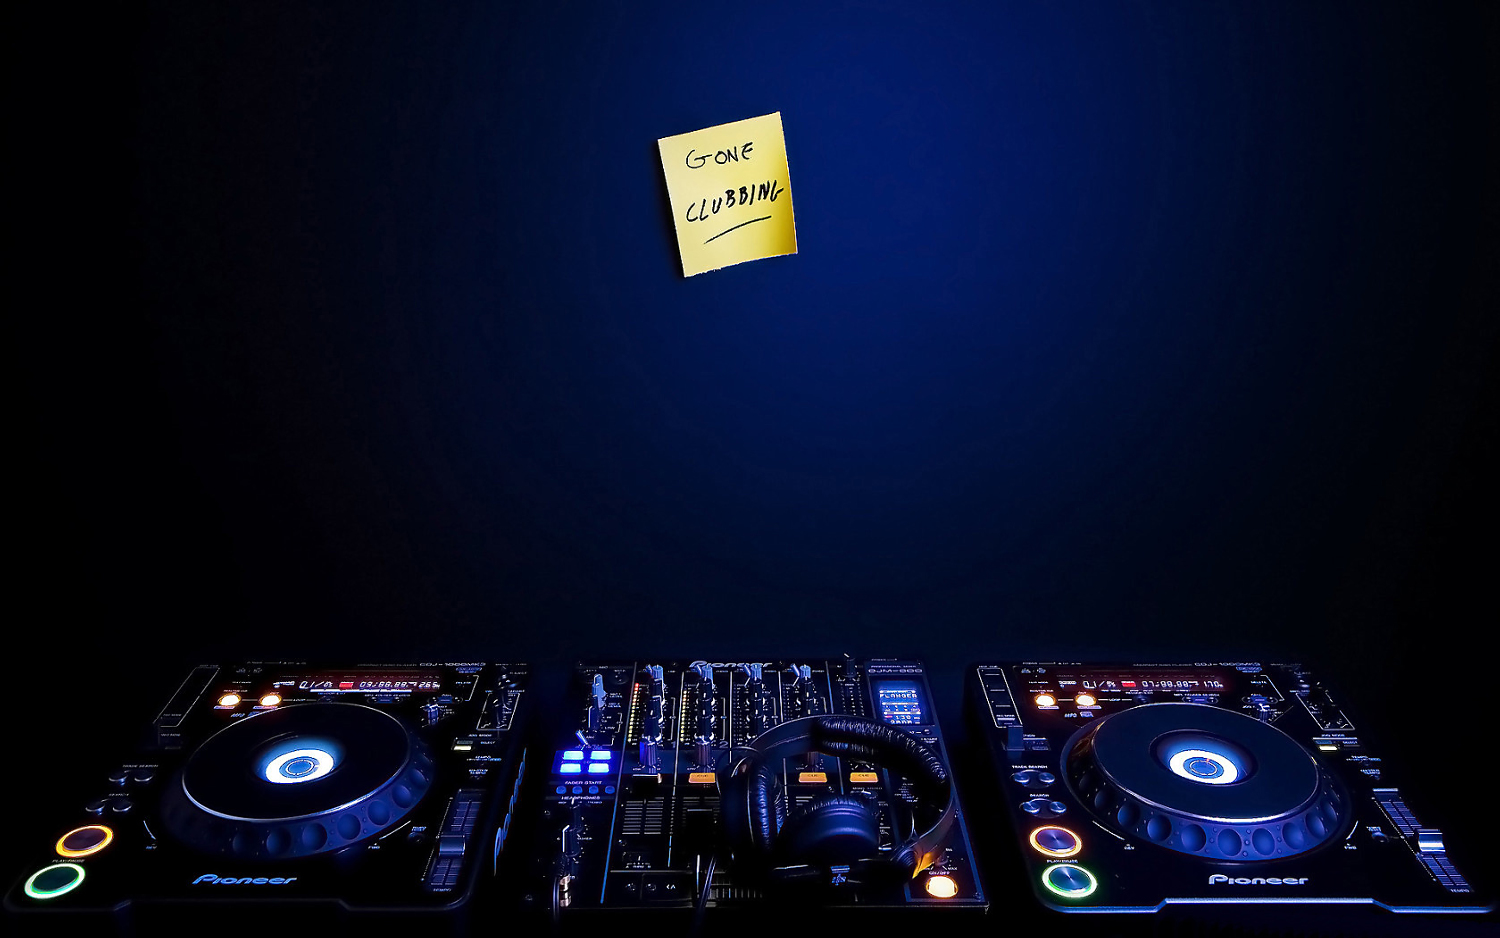 Gone Clubbing DJ Mixer wallpaper 6064 www dj rohit 5d com on Rediff